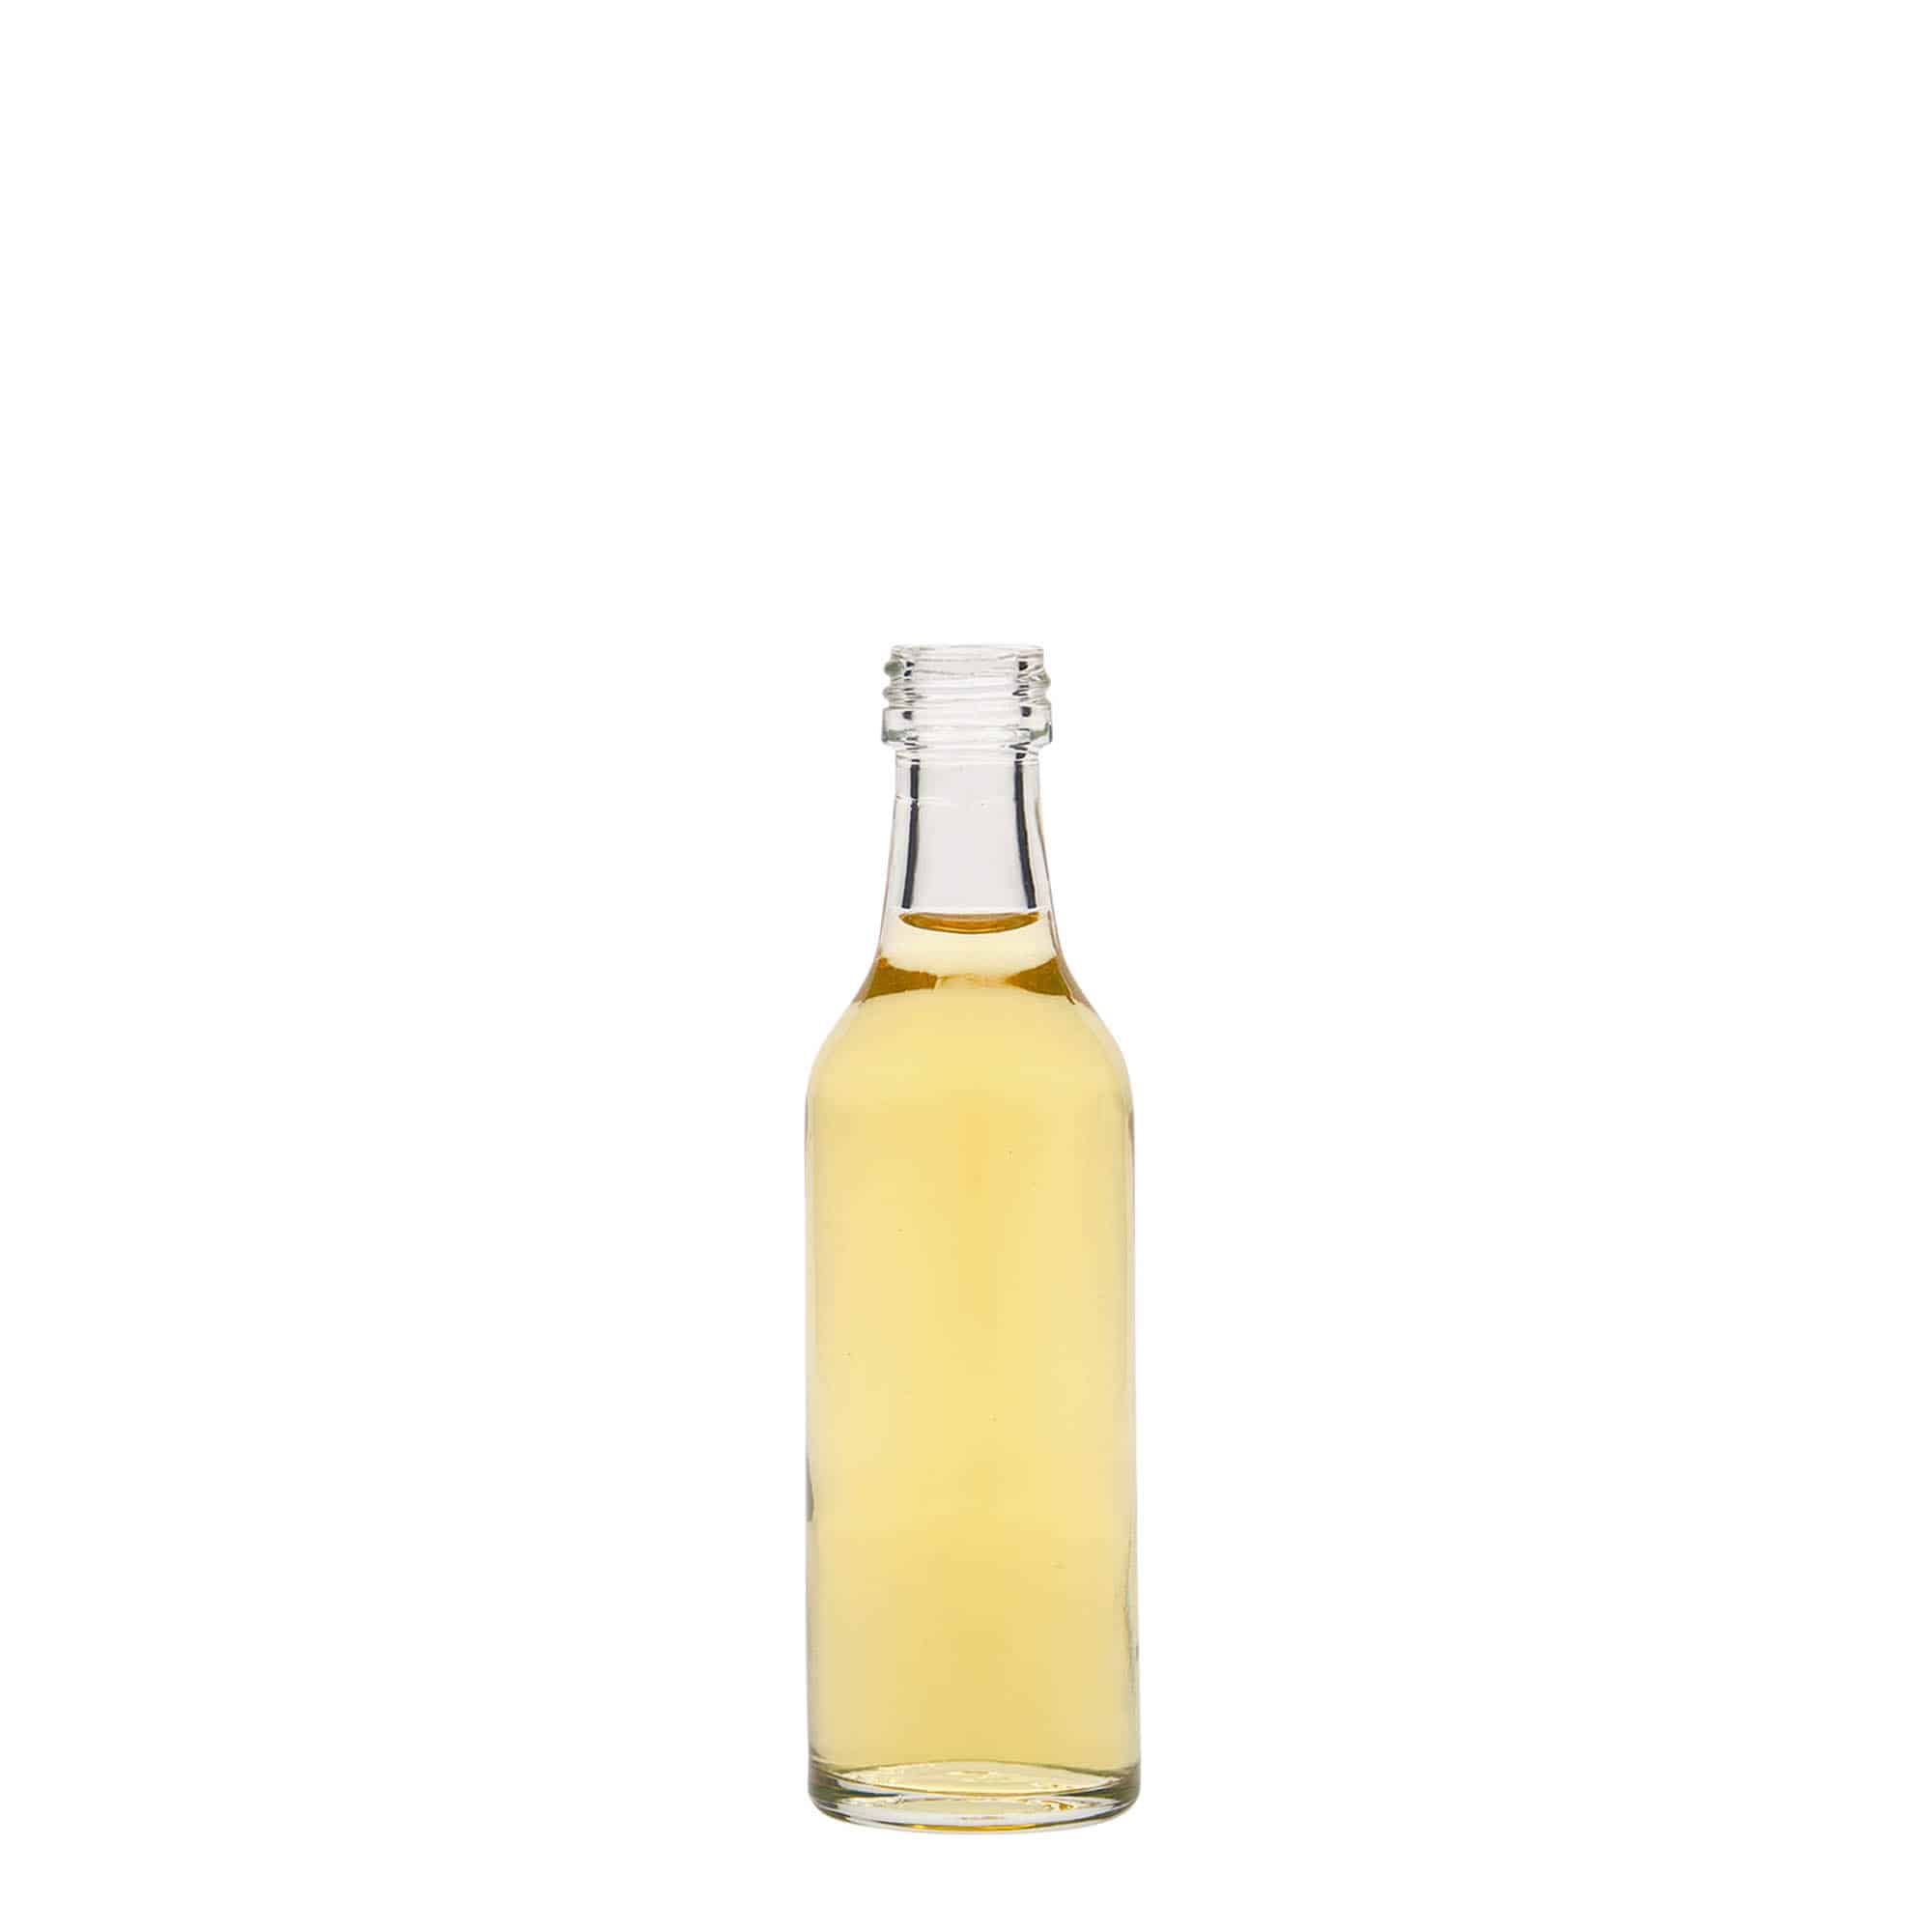 50 ml straight neck glass bottle, closure: PP 18